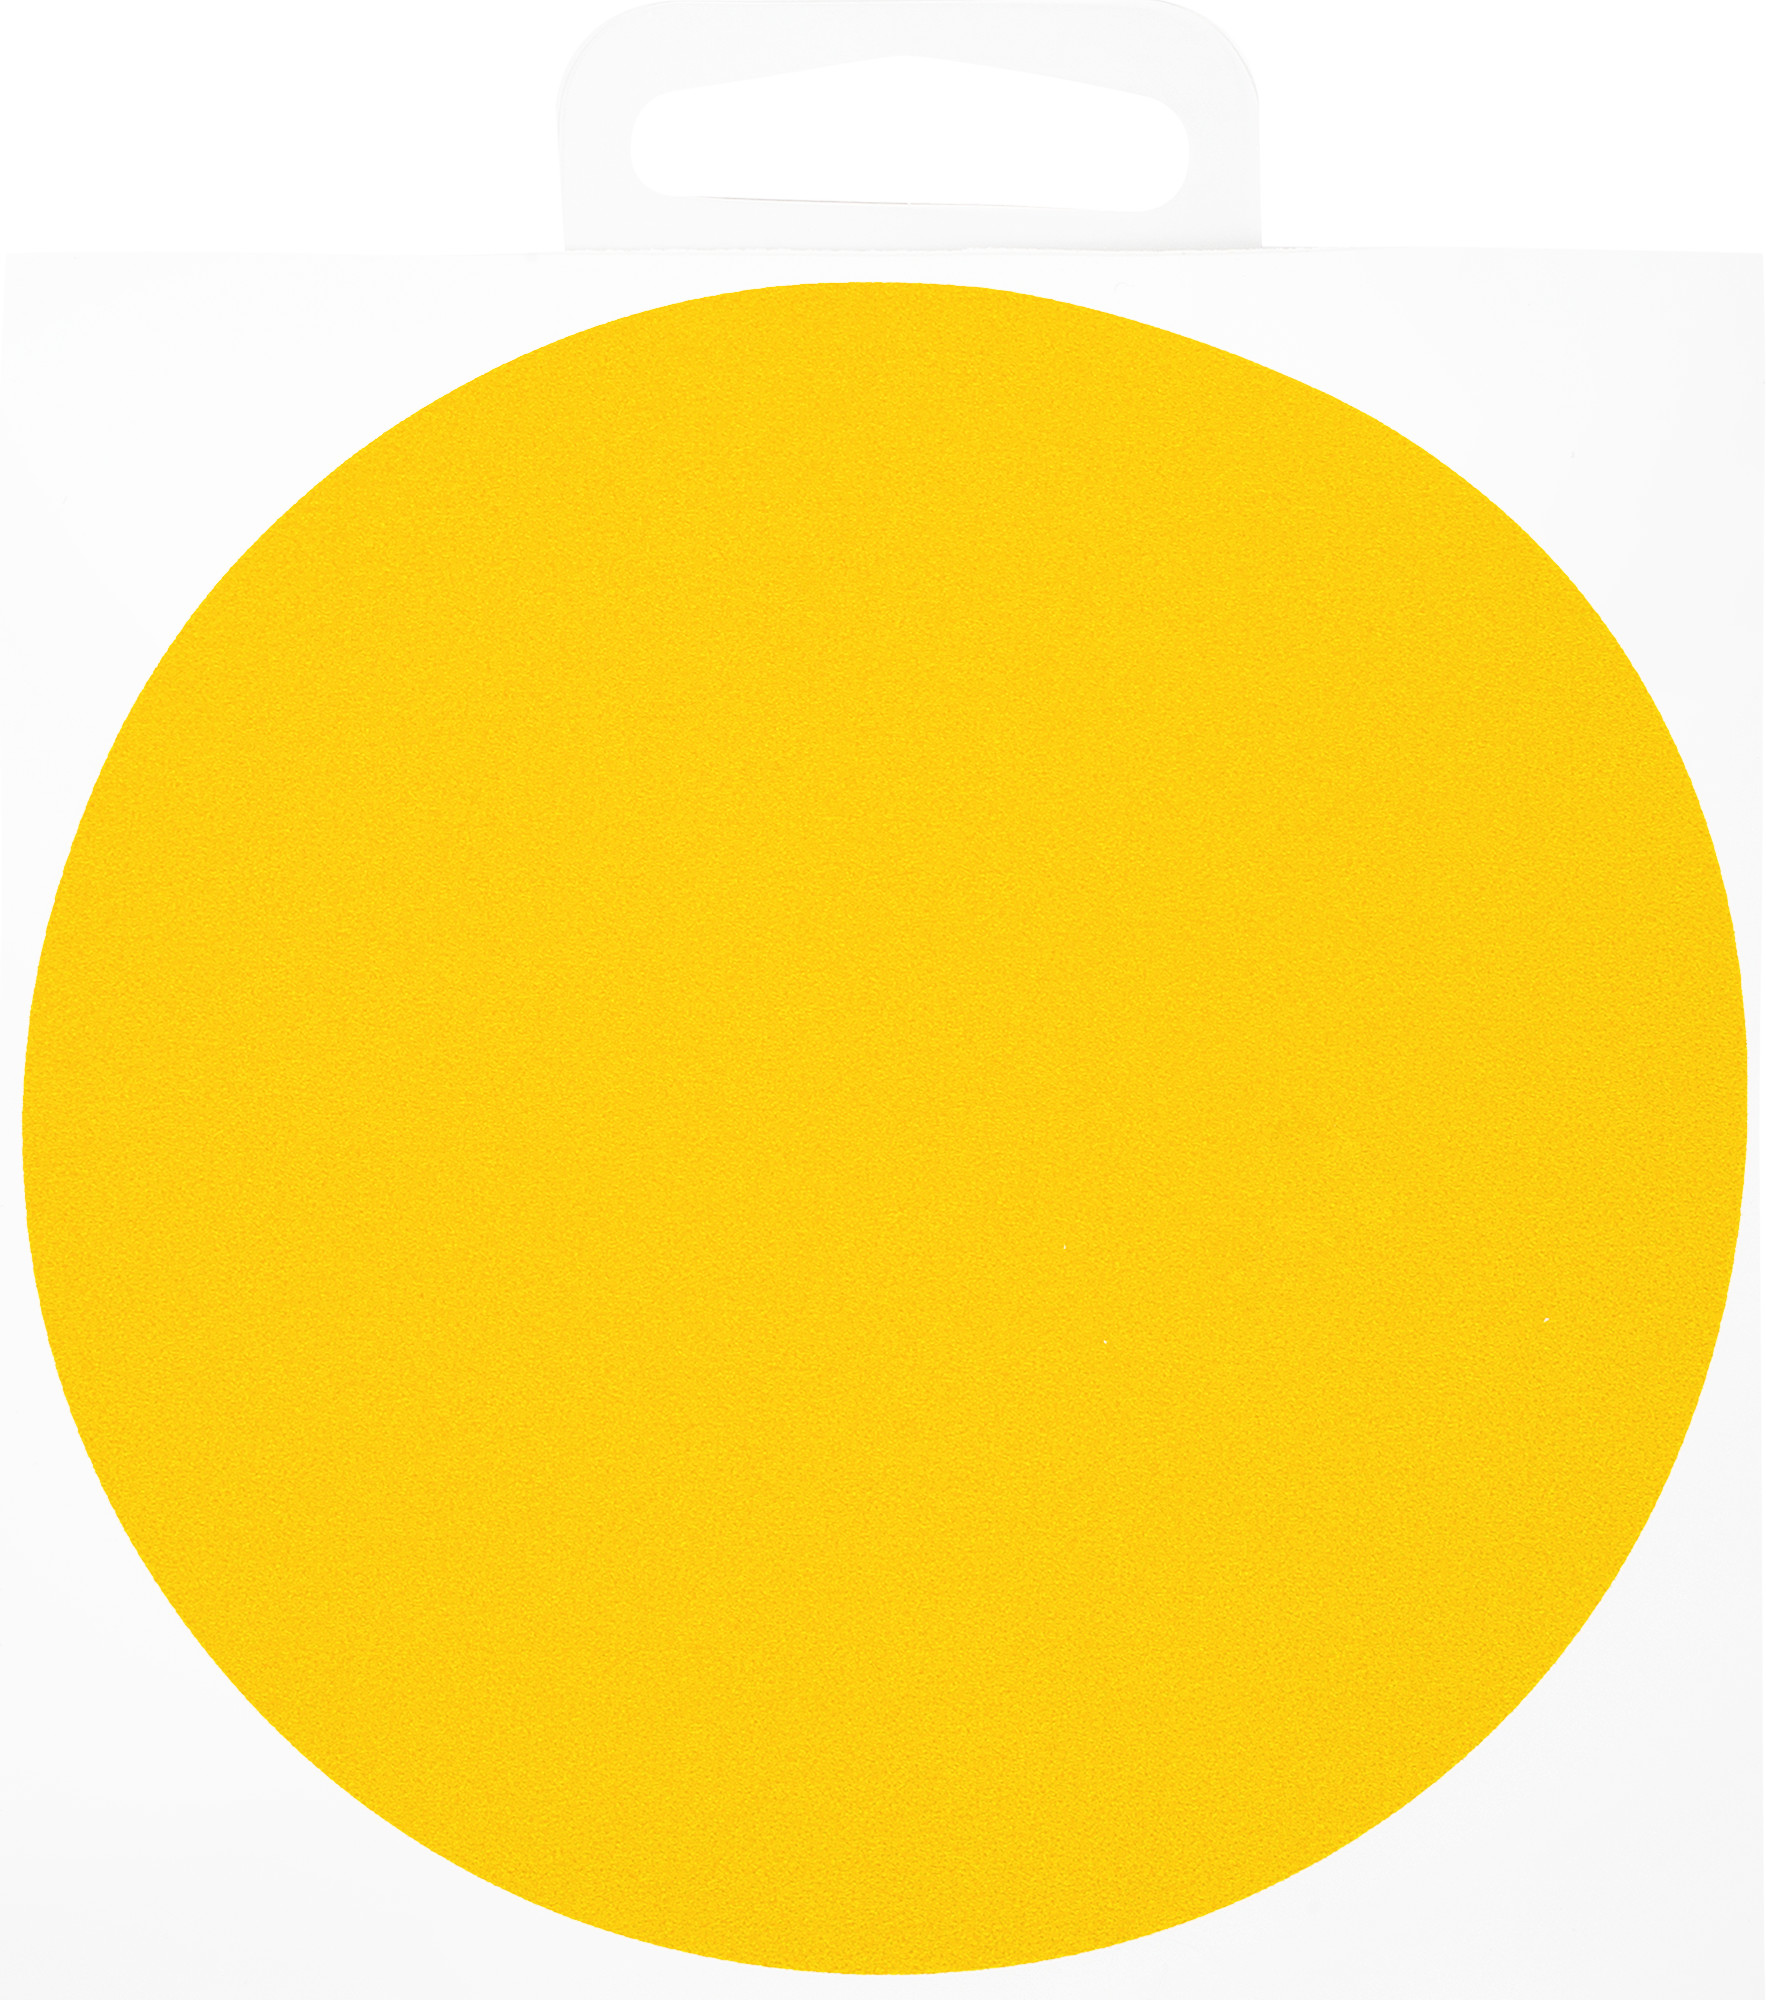 Знак маленького круга. Желтый круг. Круг желтого цвета. Желтый кружок. Кружок желтого цвета.